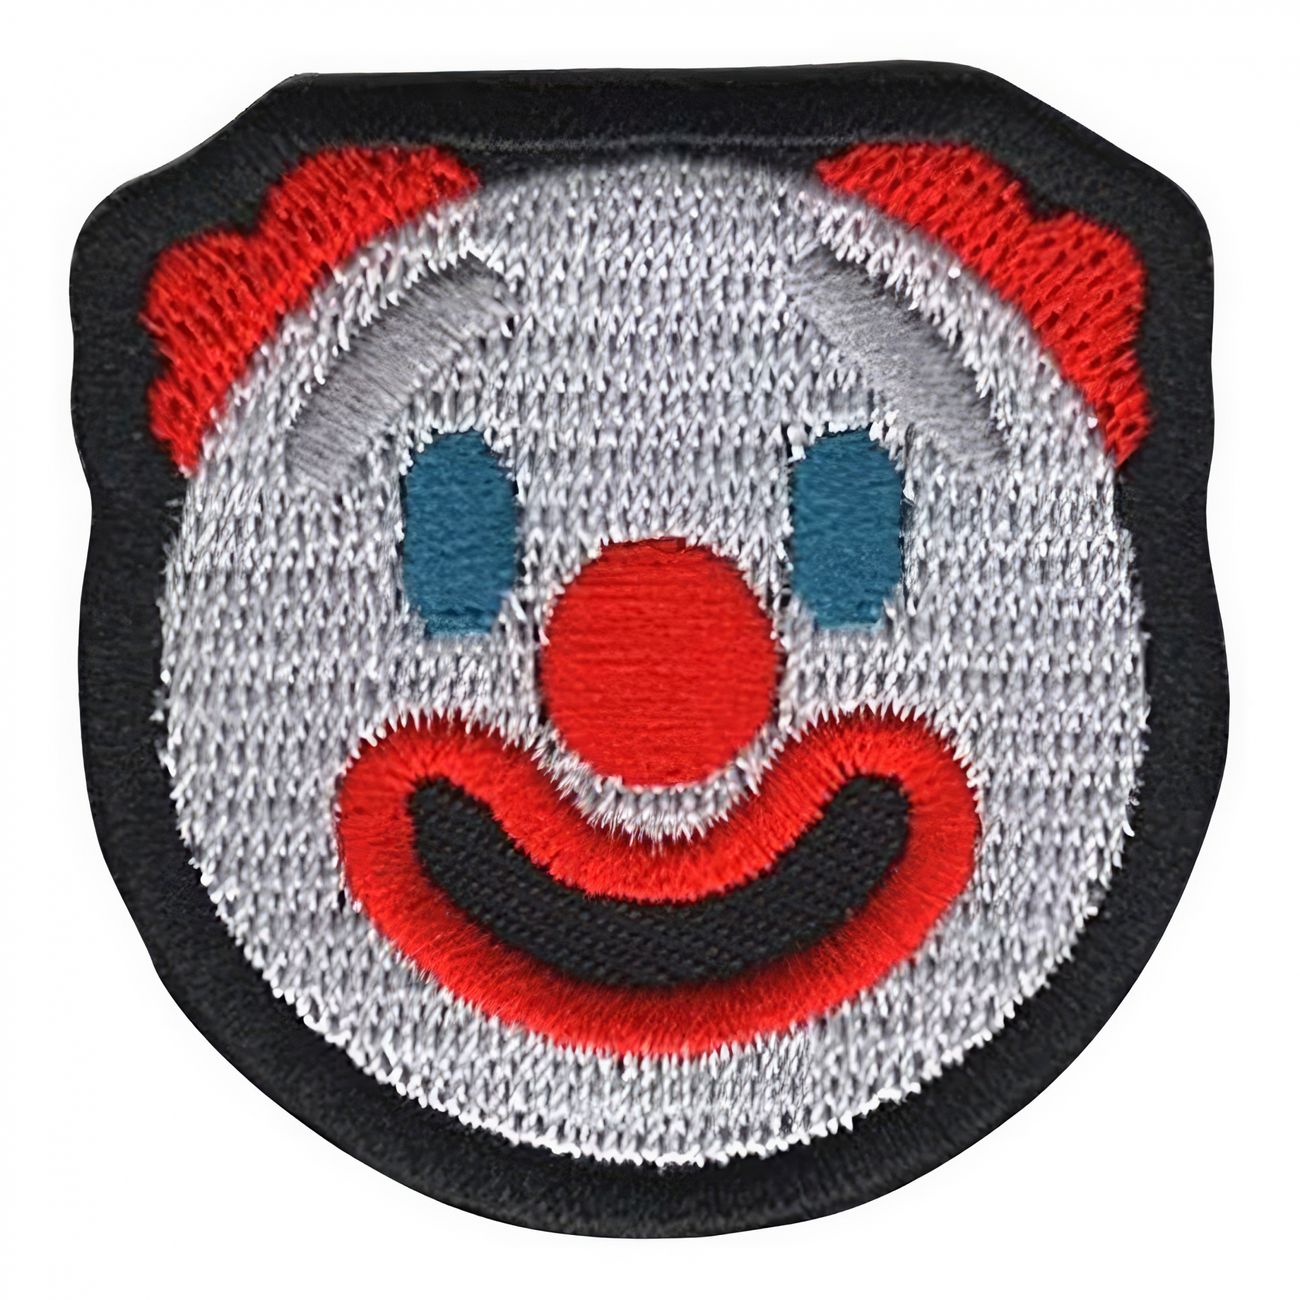 tygmarke-emoji-clown-s-94063-1